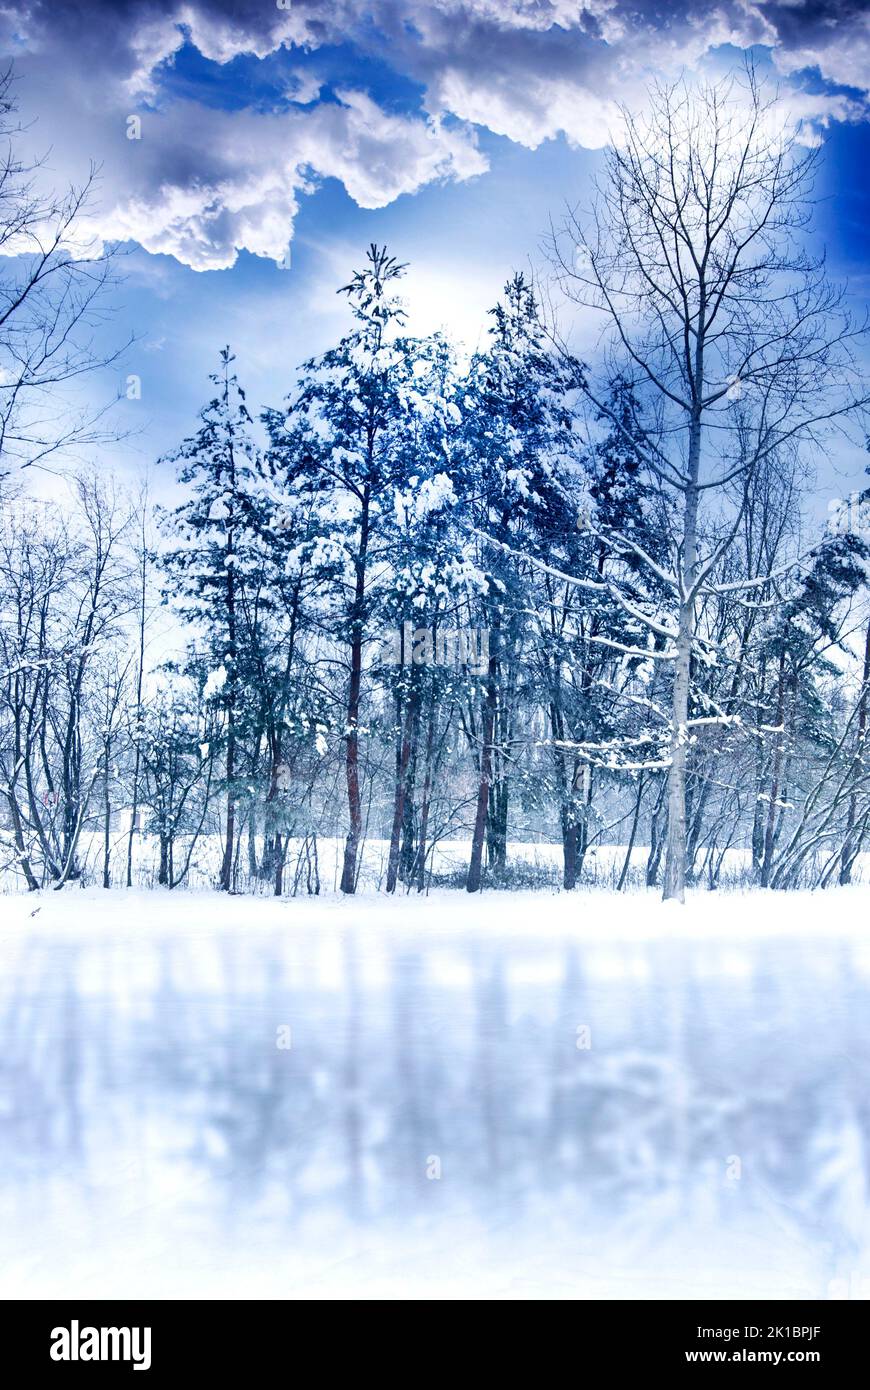 Romantische Winterlandschaft mit Schnee, Bäumen Nadelbäumen, blauem Himmel mit weißen Wolken und Stockfoto